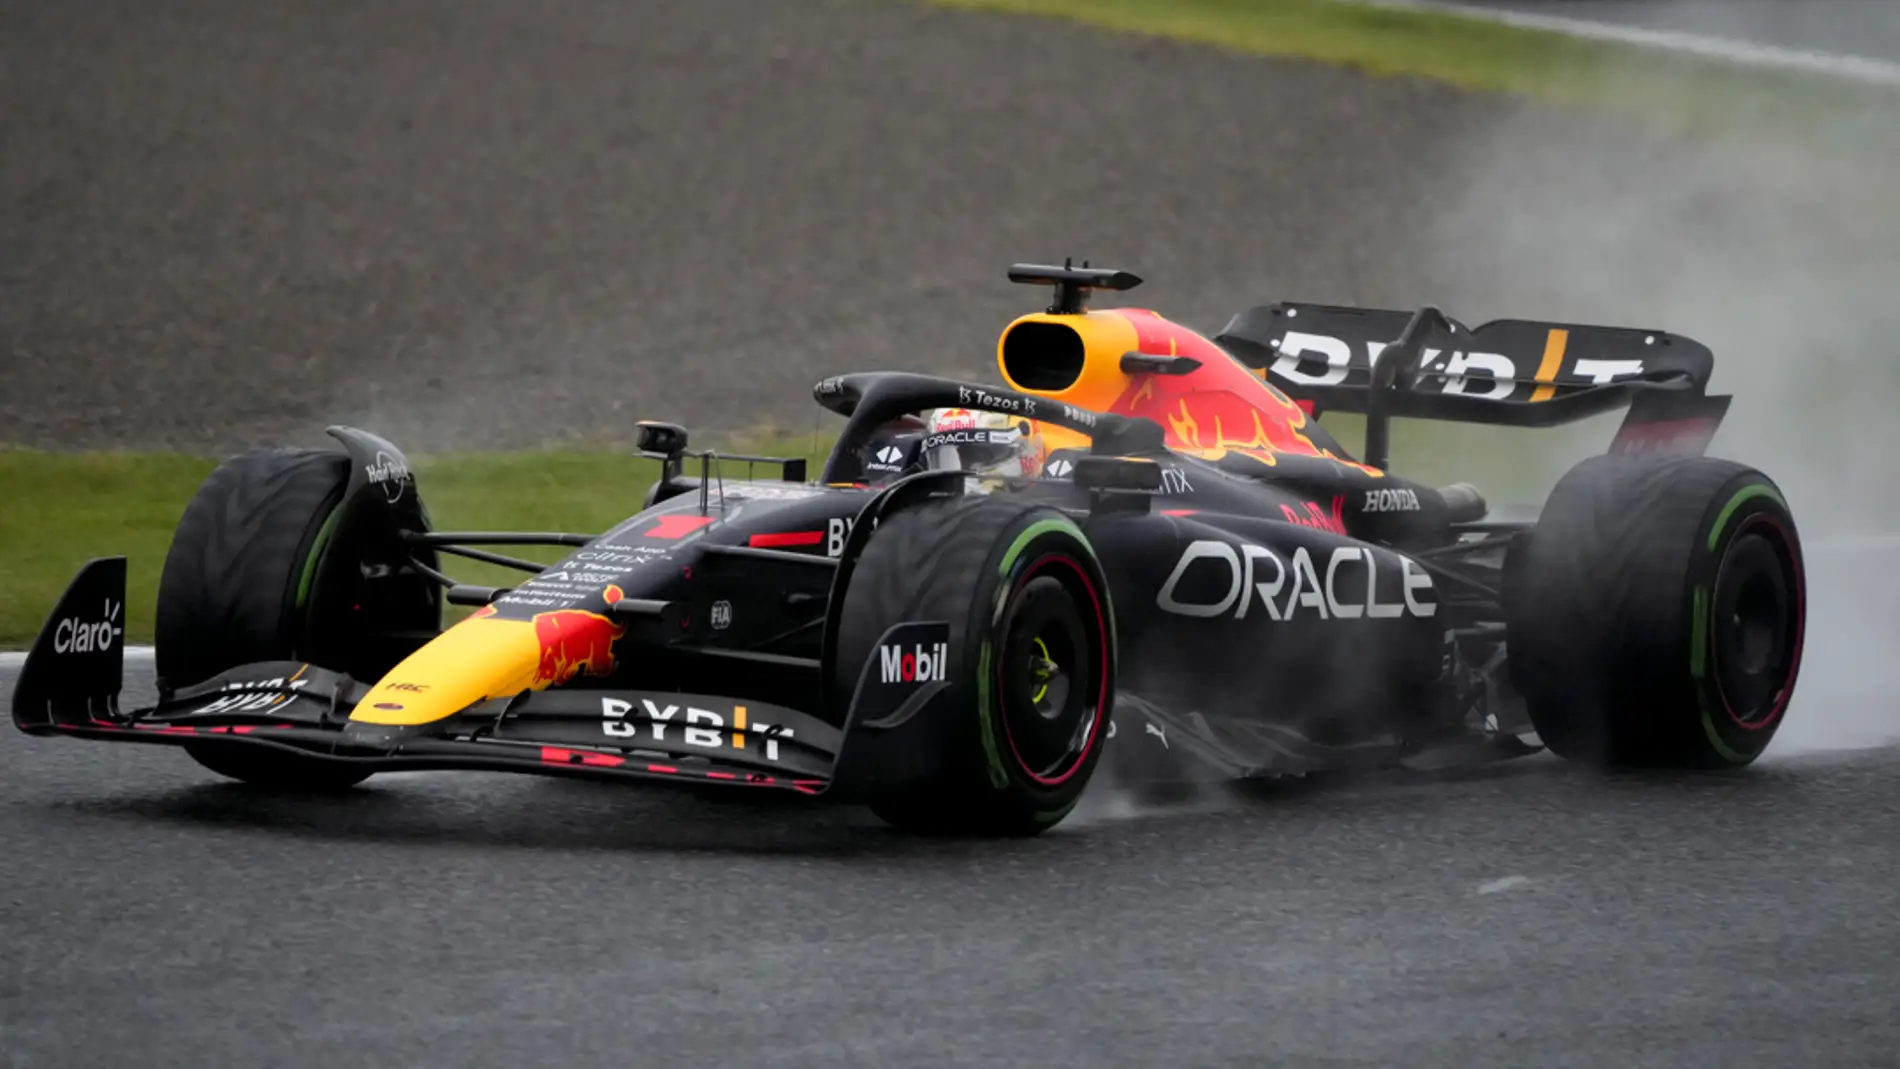 Max Verstappen gana en Suzuka y se proclama campeón del mundo de Fórmula 1